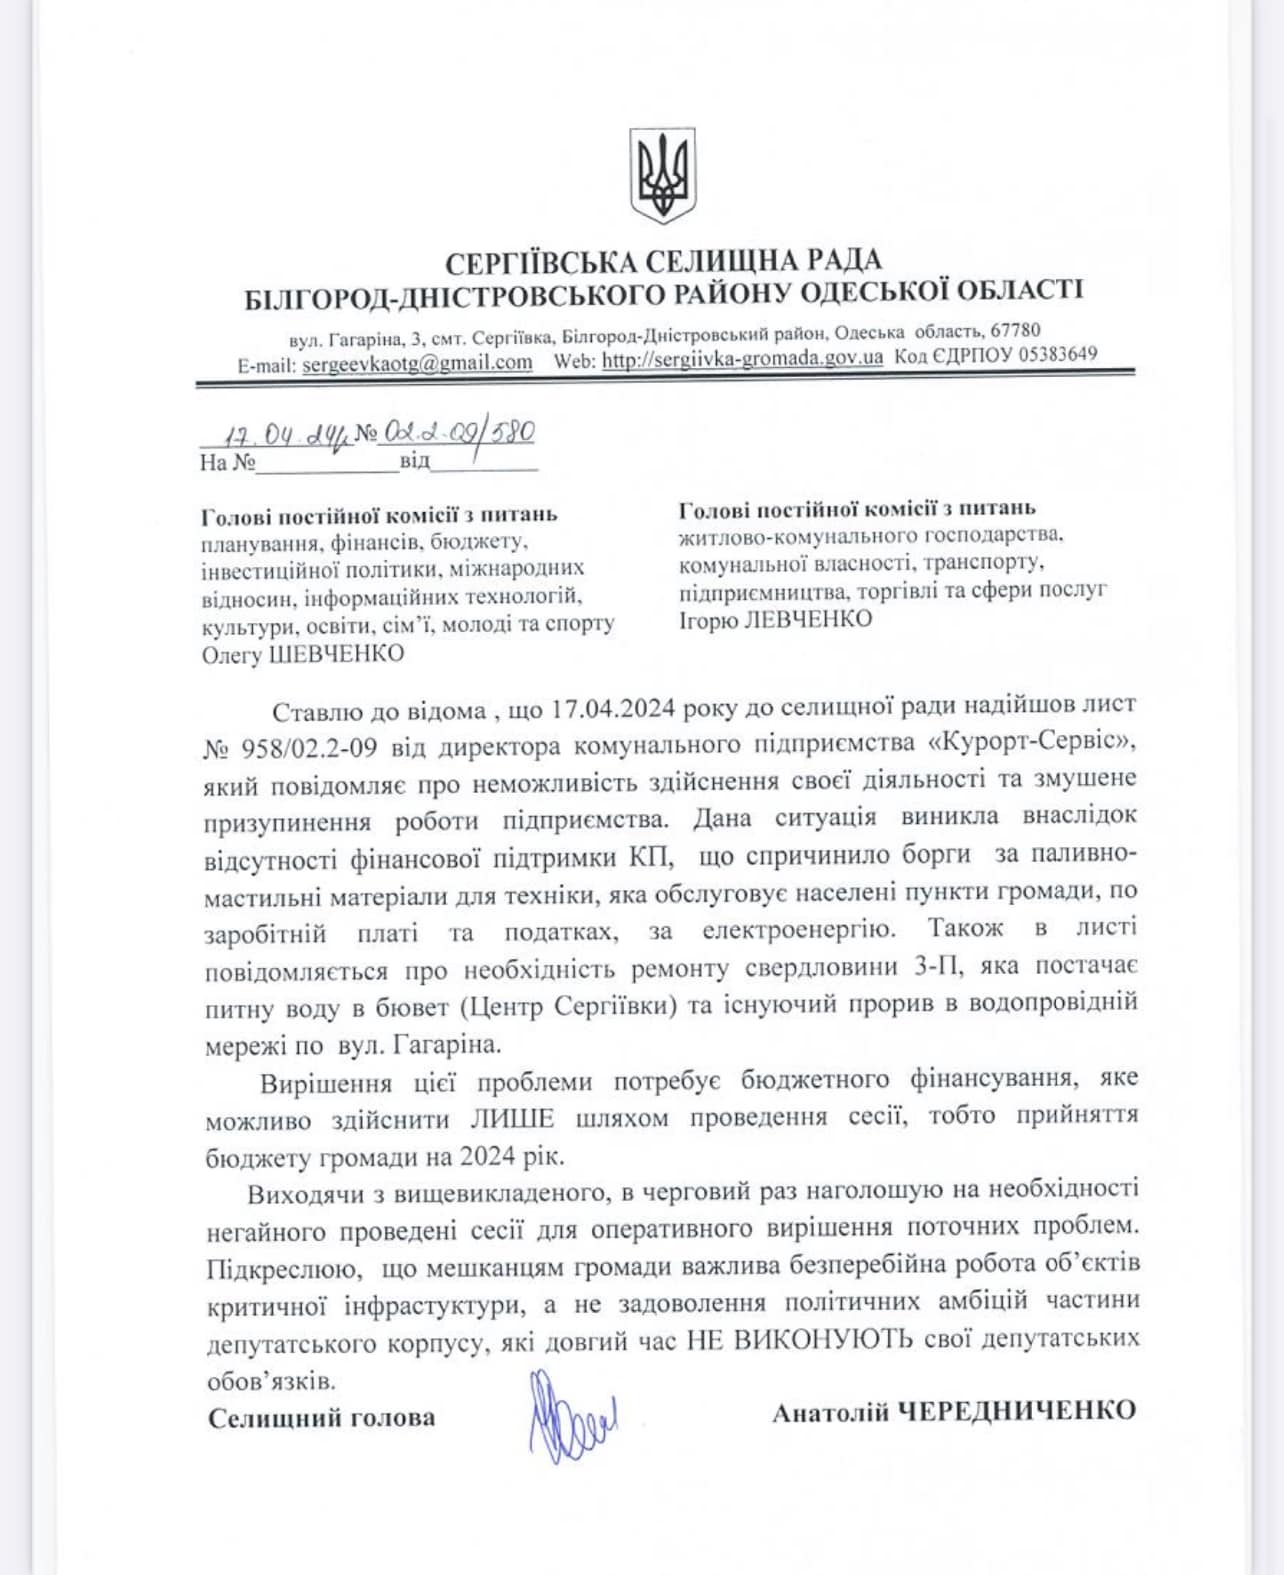 Длительное непроведение сессий привело к остановке работы коммунального предприятия в обществе Белгород-Днестровщины